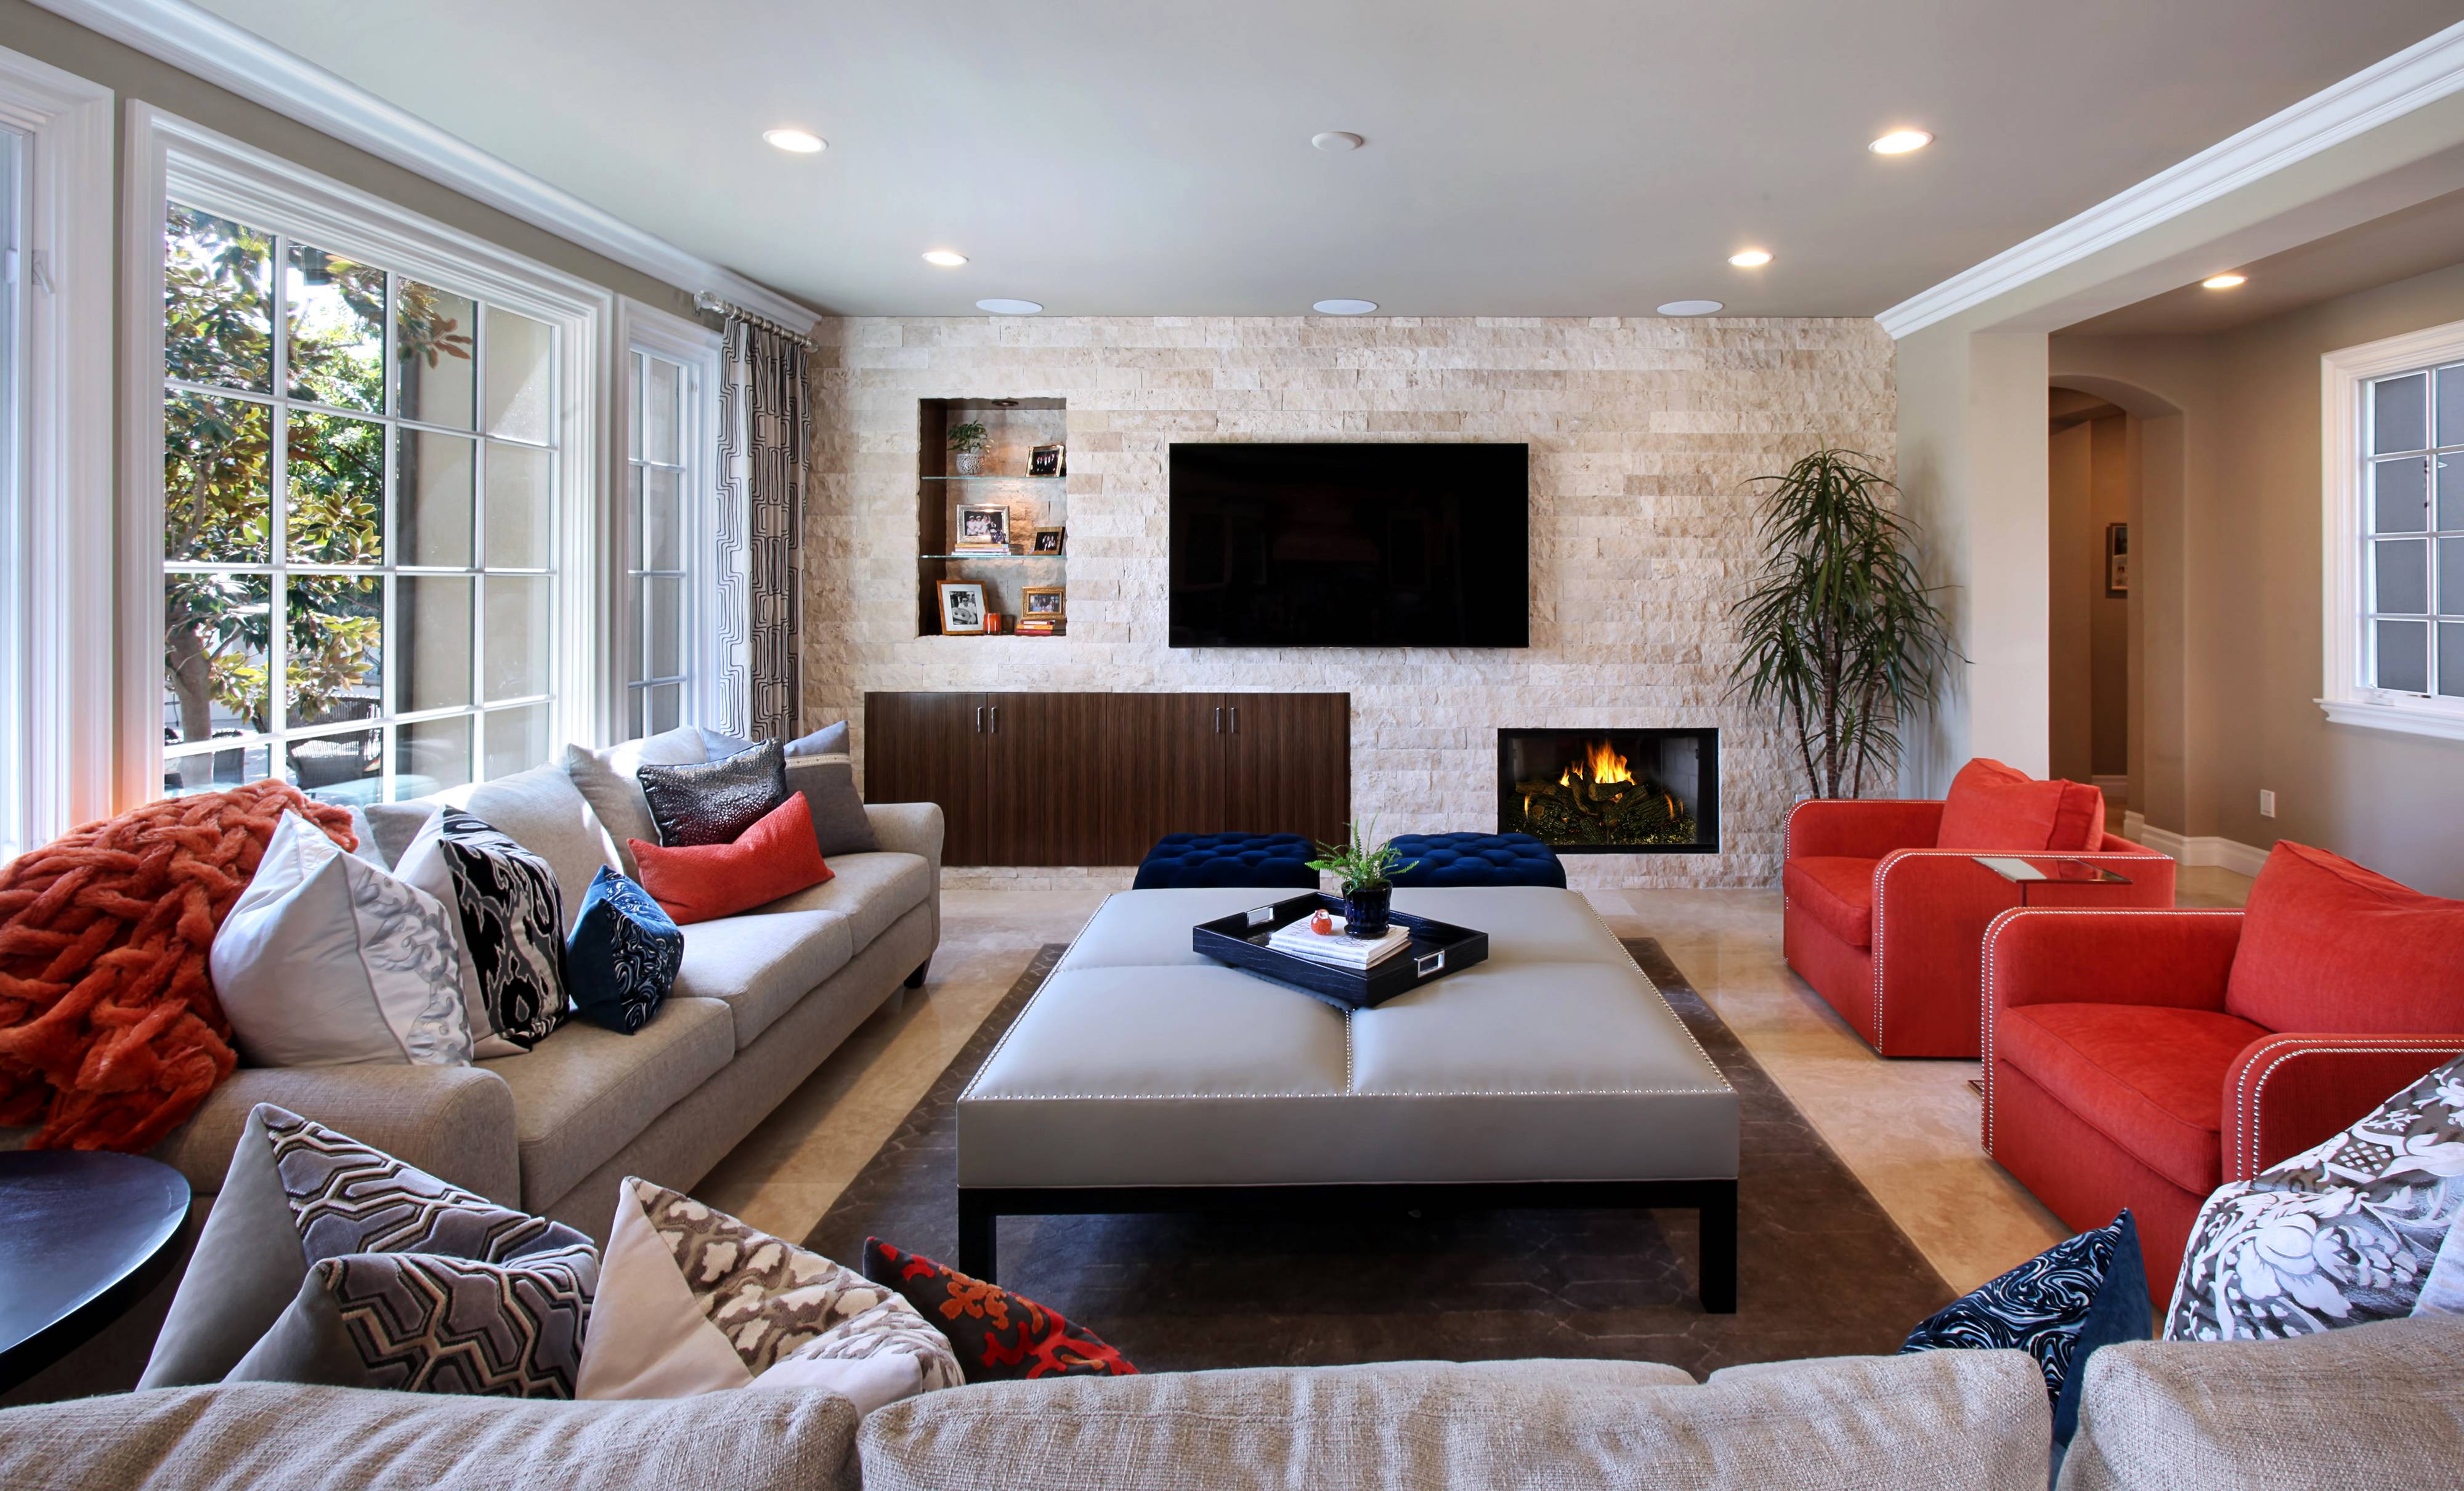 Современный и стильный дизайн интерьера дома. каким его видят эксперты?